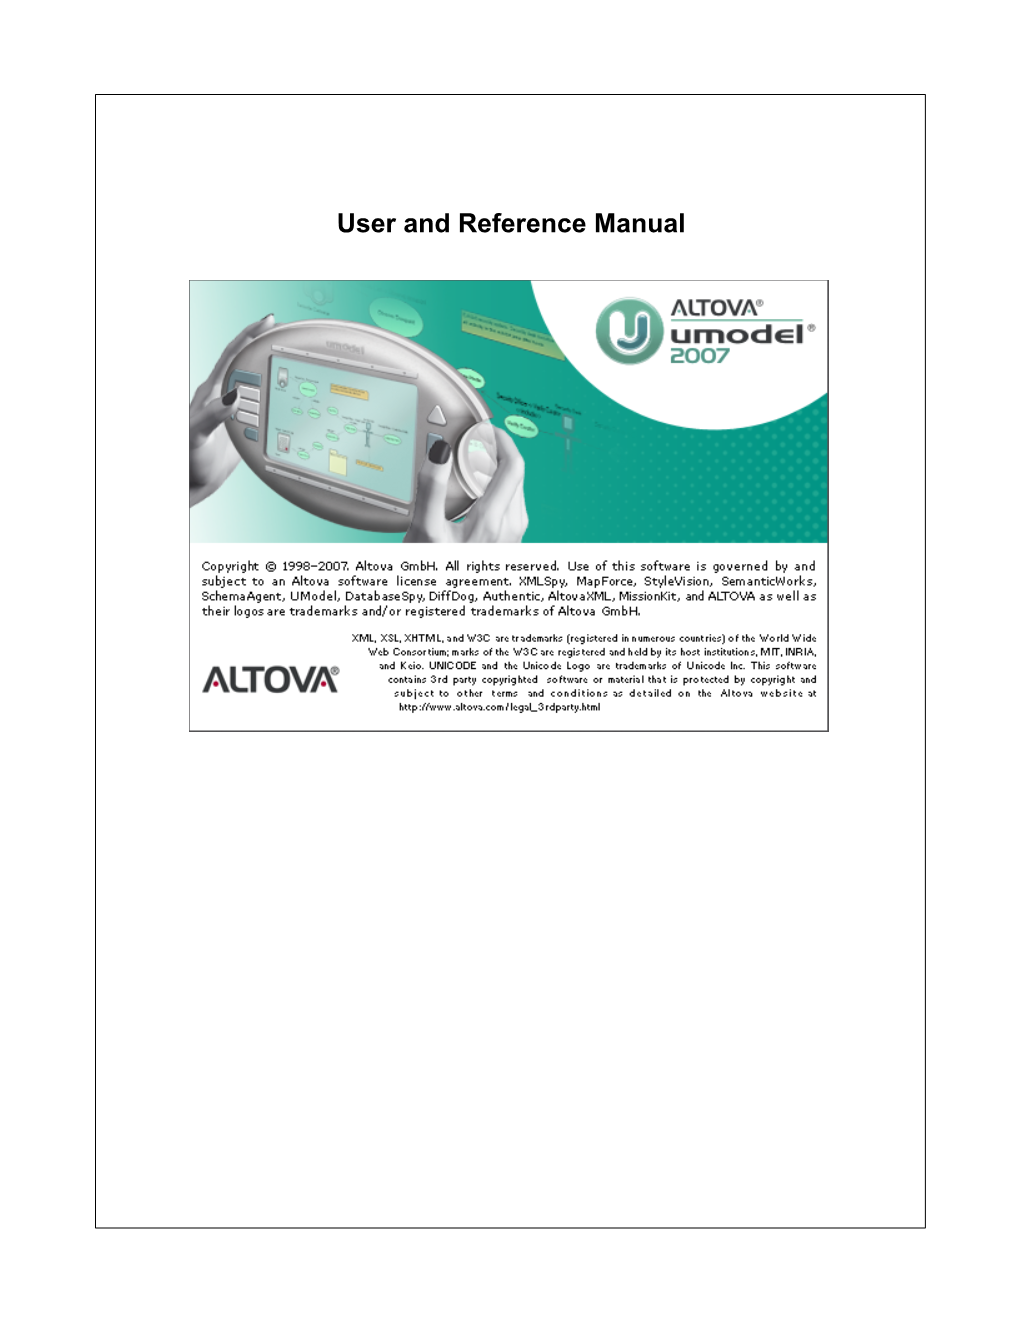 Altova Umodel 2007 User & Reference Manual